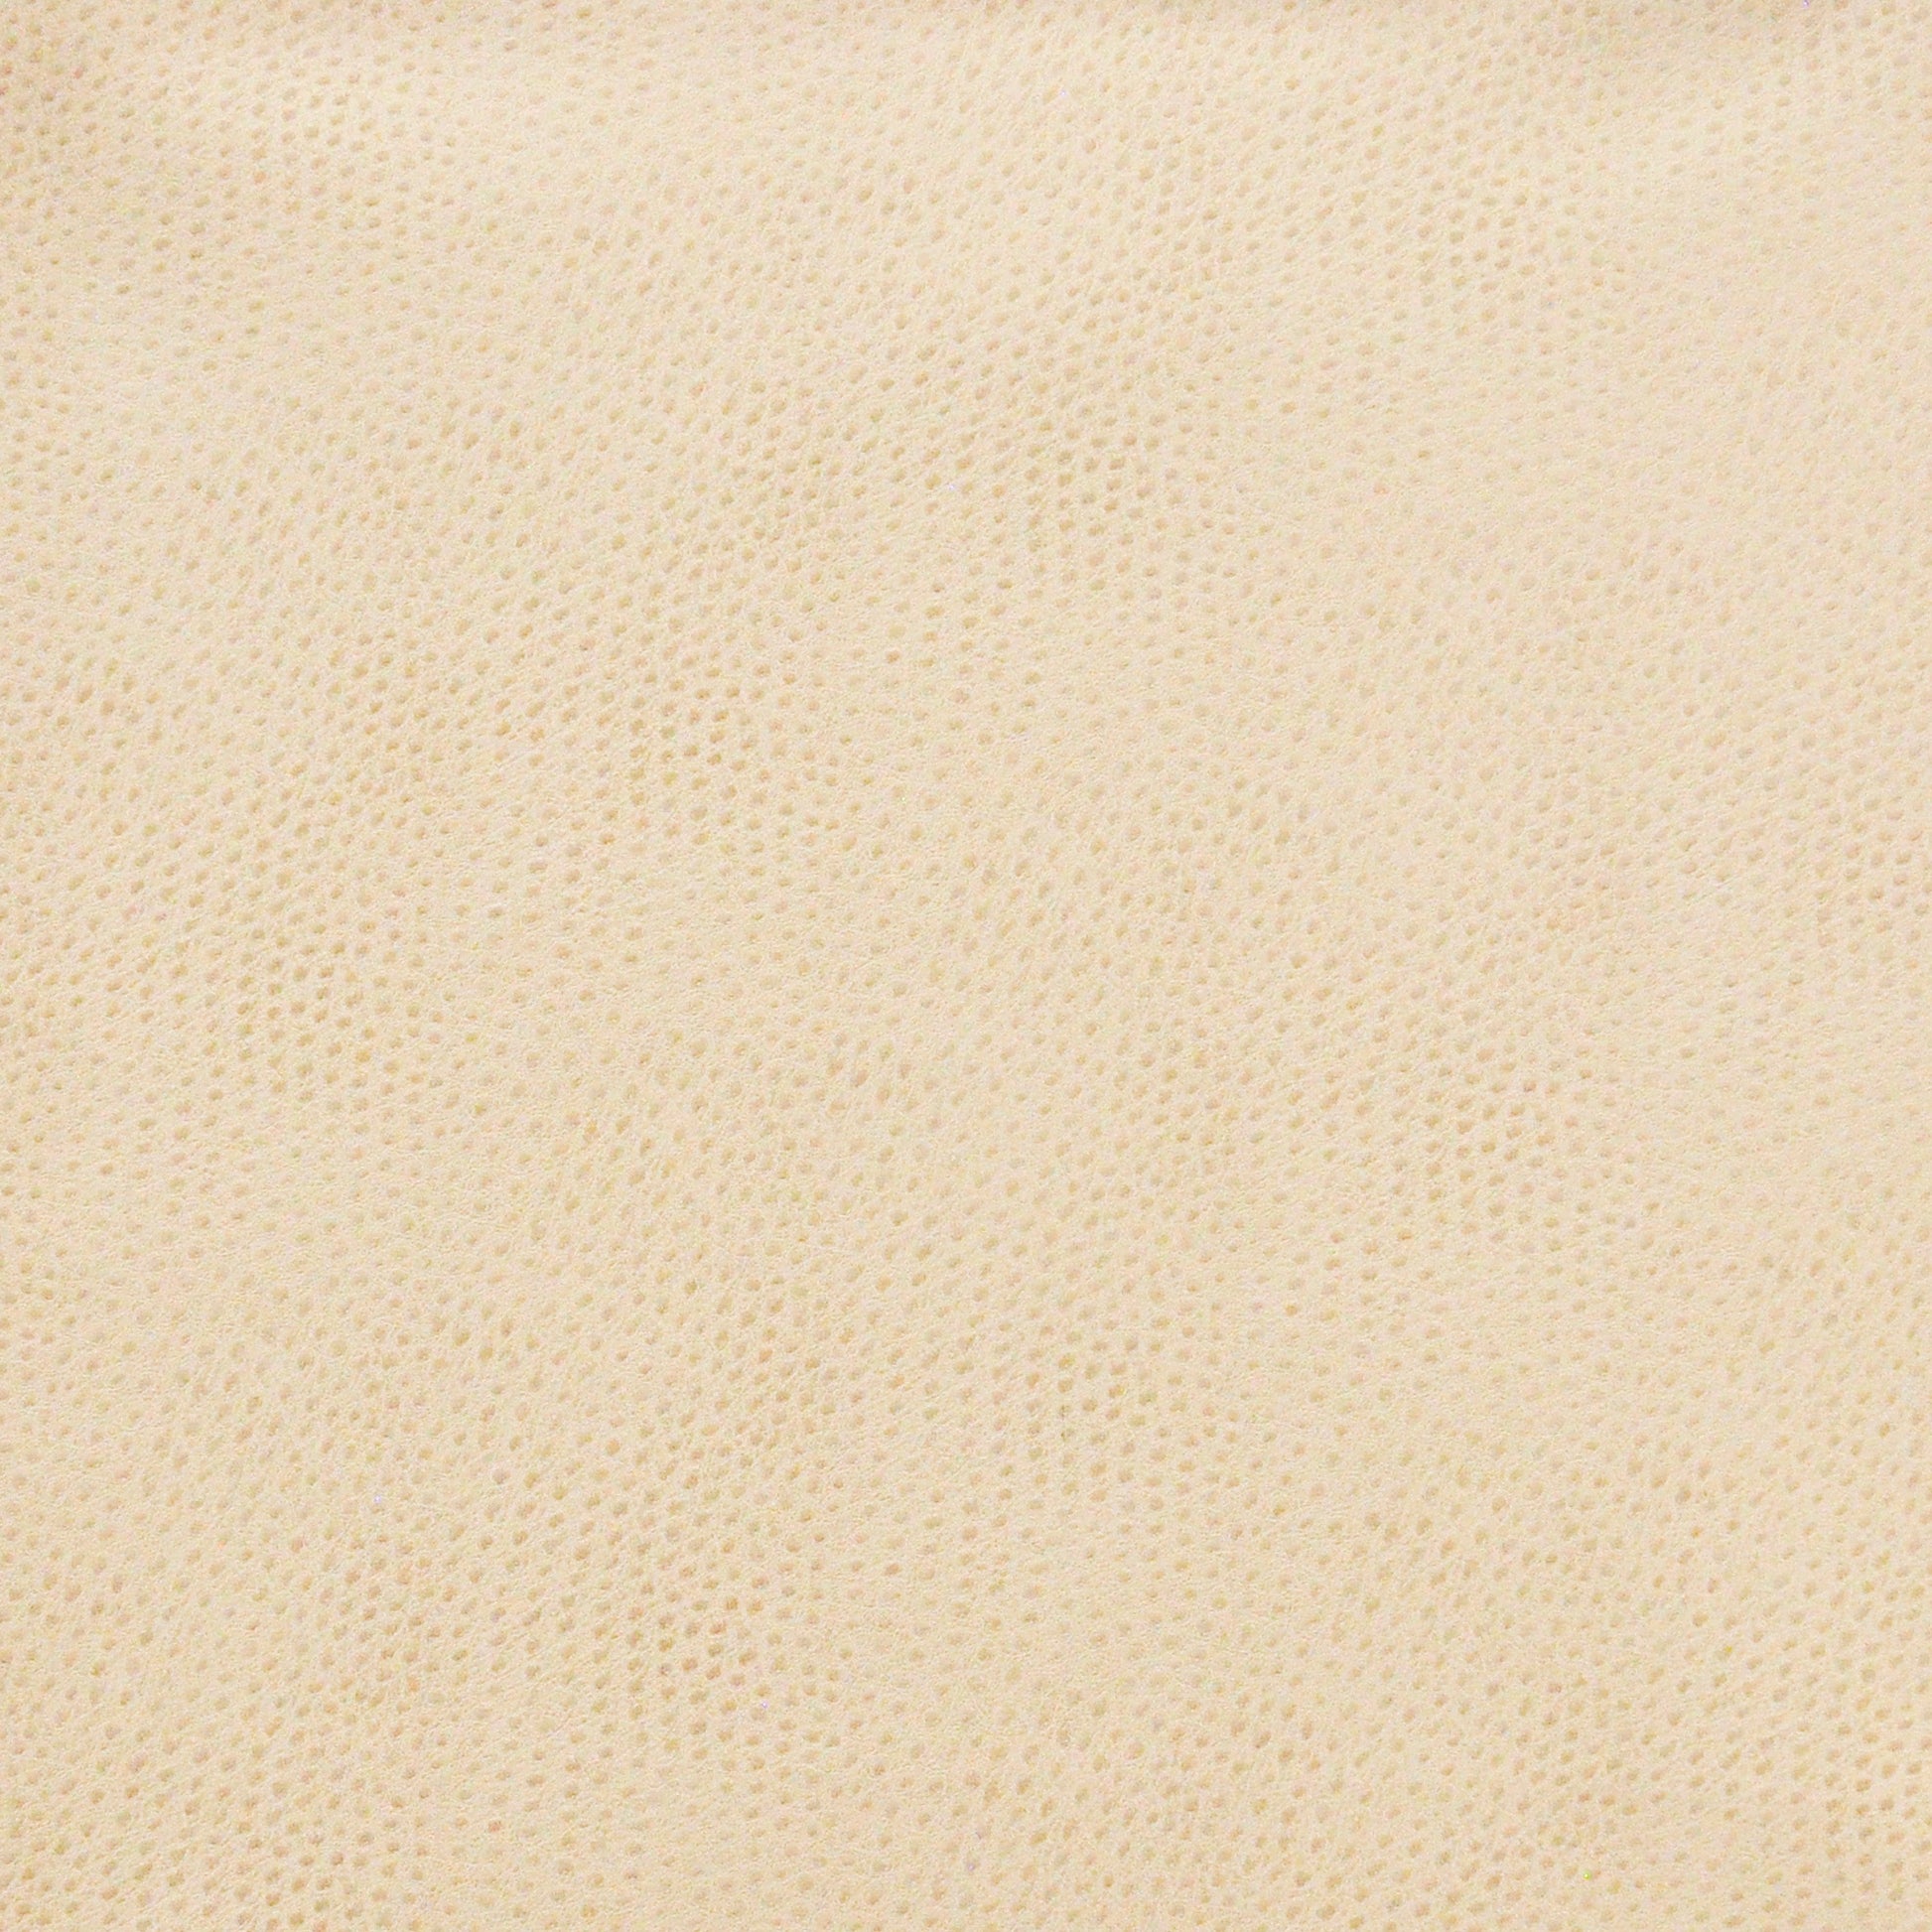 Purchase Maxwell Fabric - Buckeye, # 702 Marshmallow